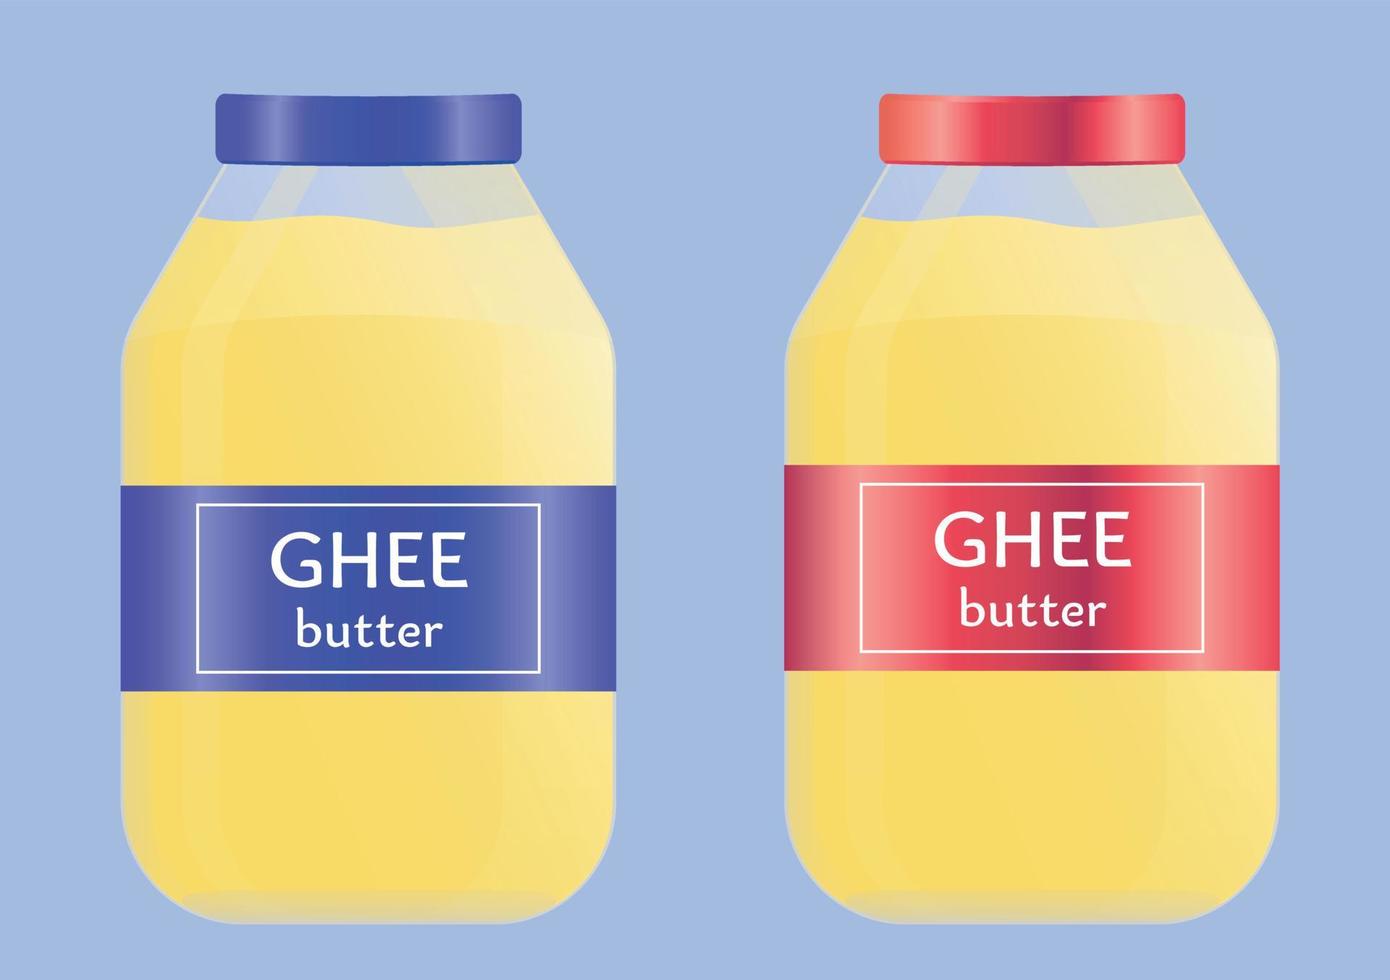 frasco de vidro com manteiga ghee natural útil, óleo. comida indiana ayurvédica. manteiga ghee amarela brilhante. ilustração vetorial plana vetor